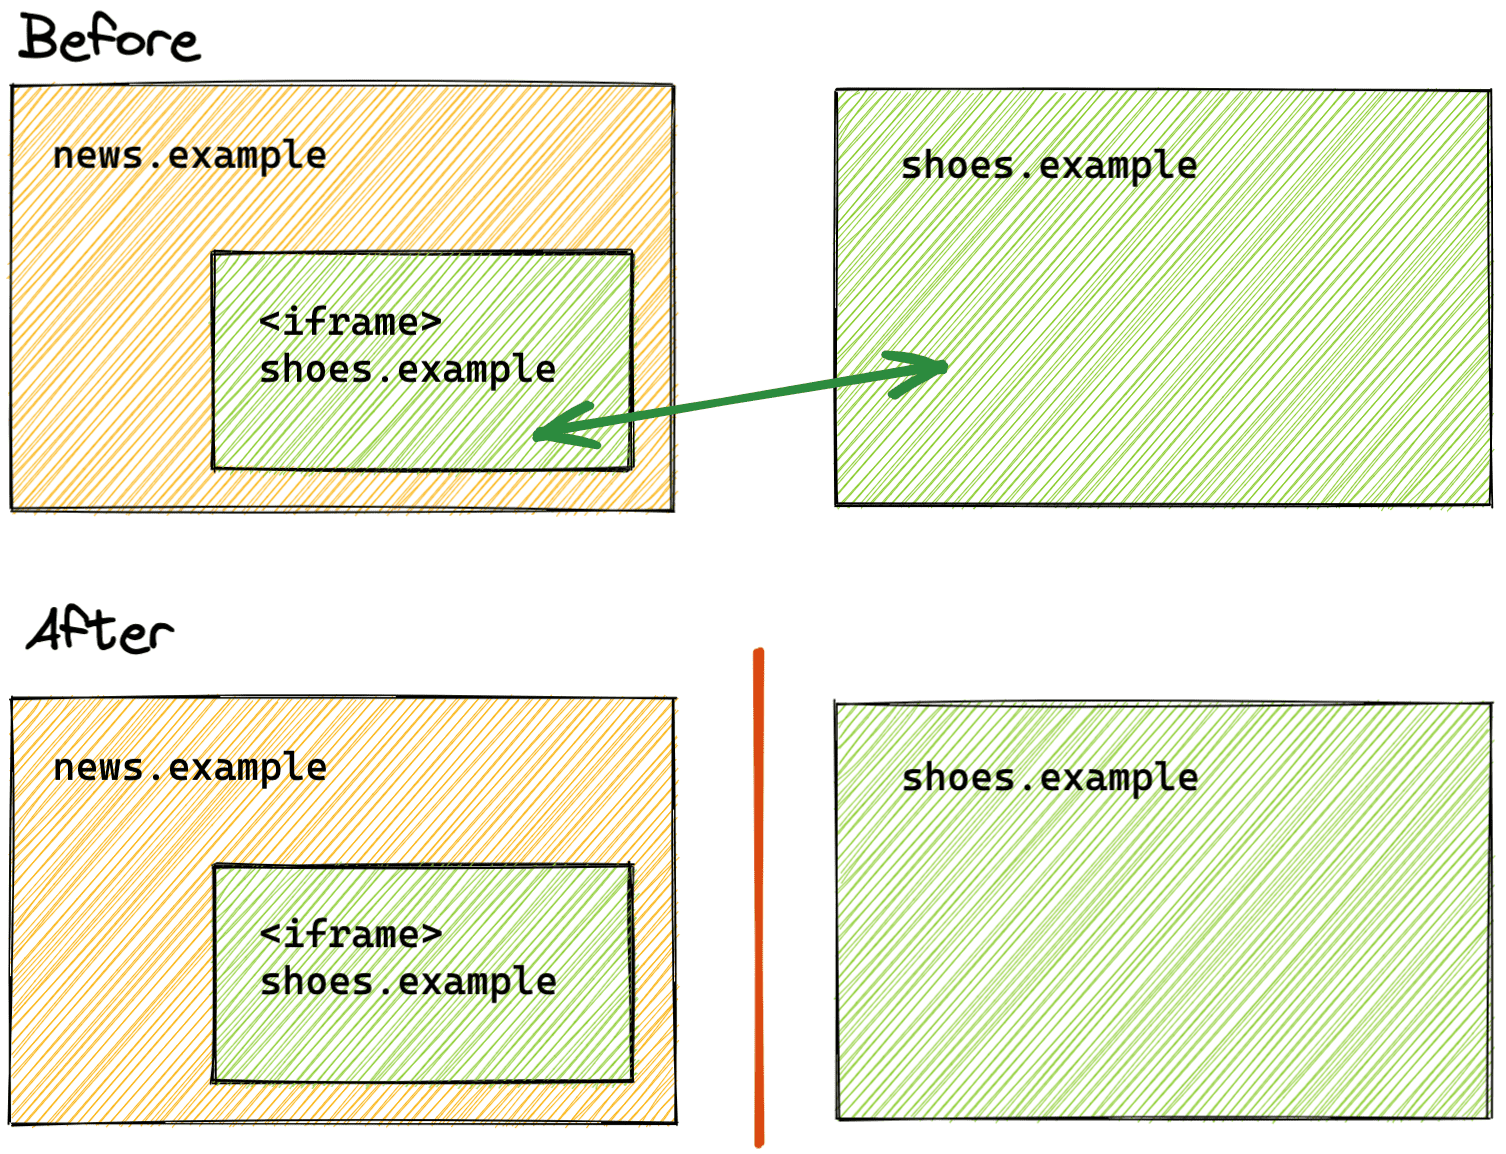 Un confronto tra lo stato di partizionamento prima e dopo lo spazio di archiviazione.